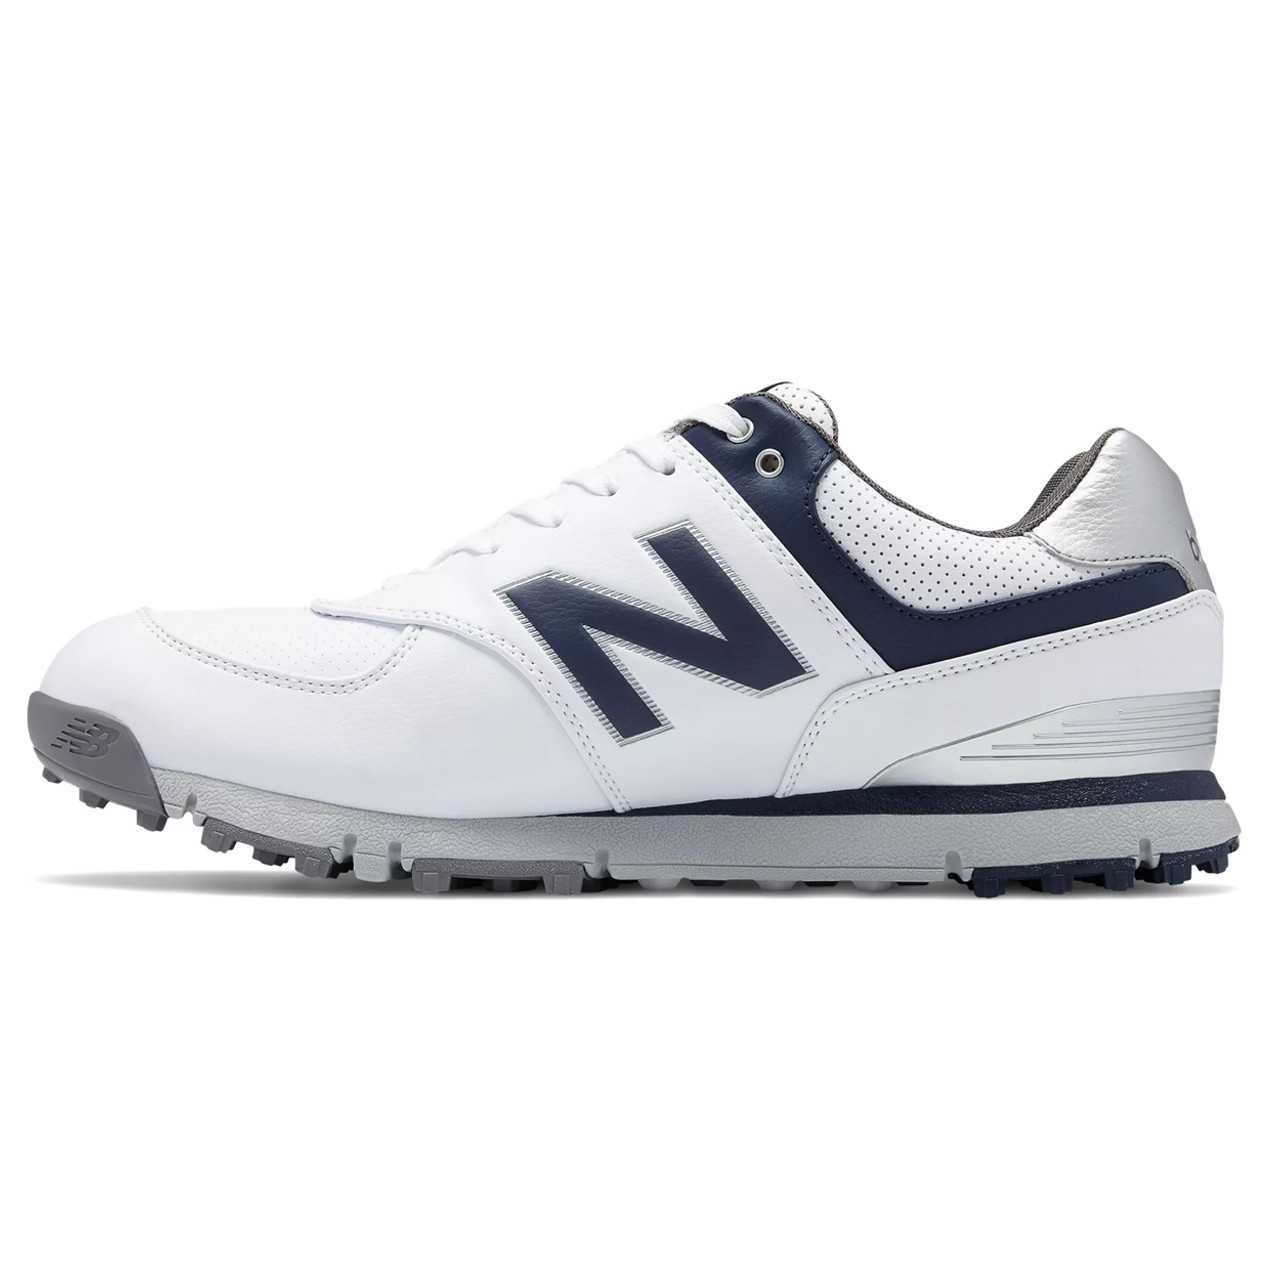 new balance nbg1005 minimus spikeless men's golf shoe